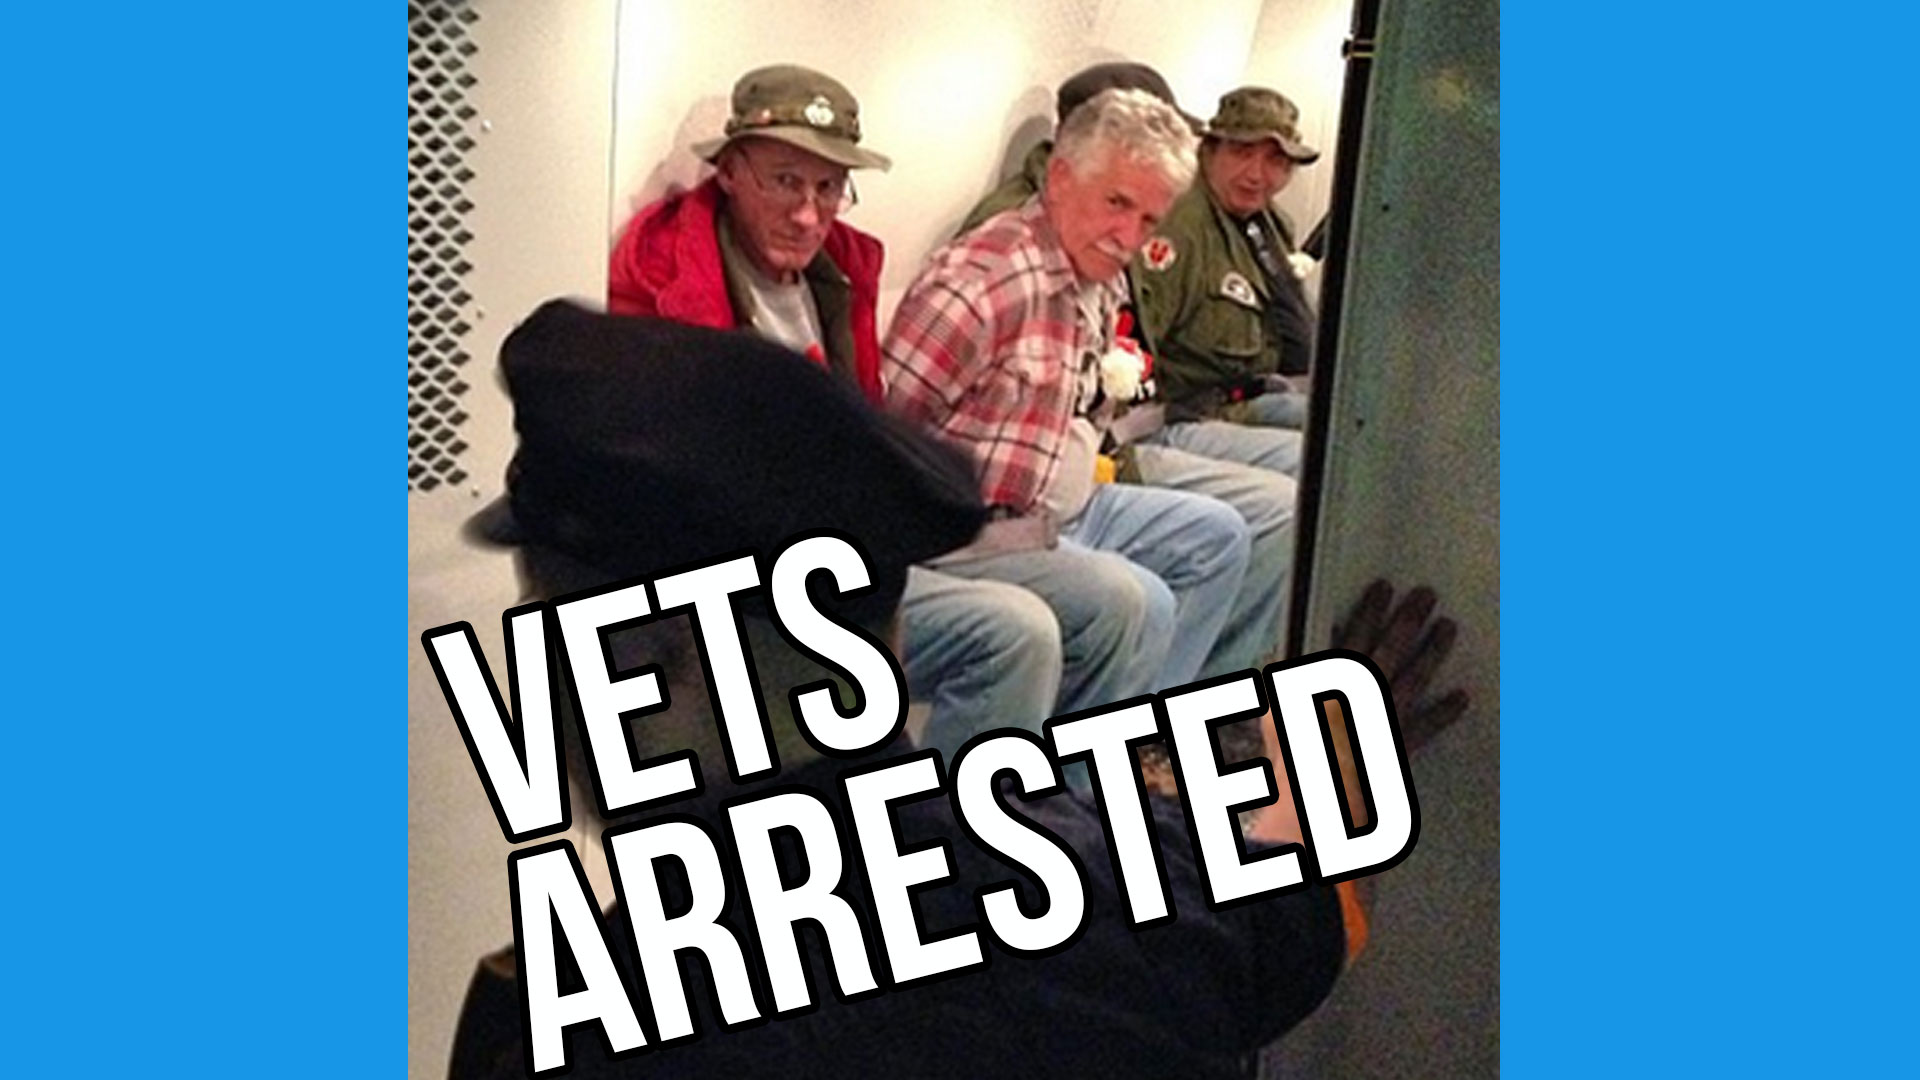 Vets Arrested at Vietnam Memorial